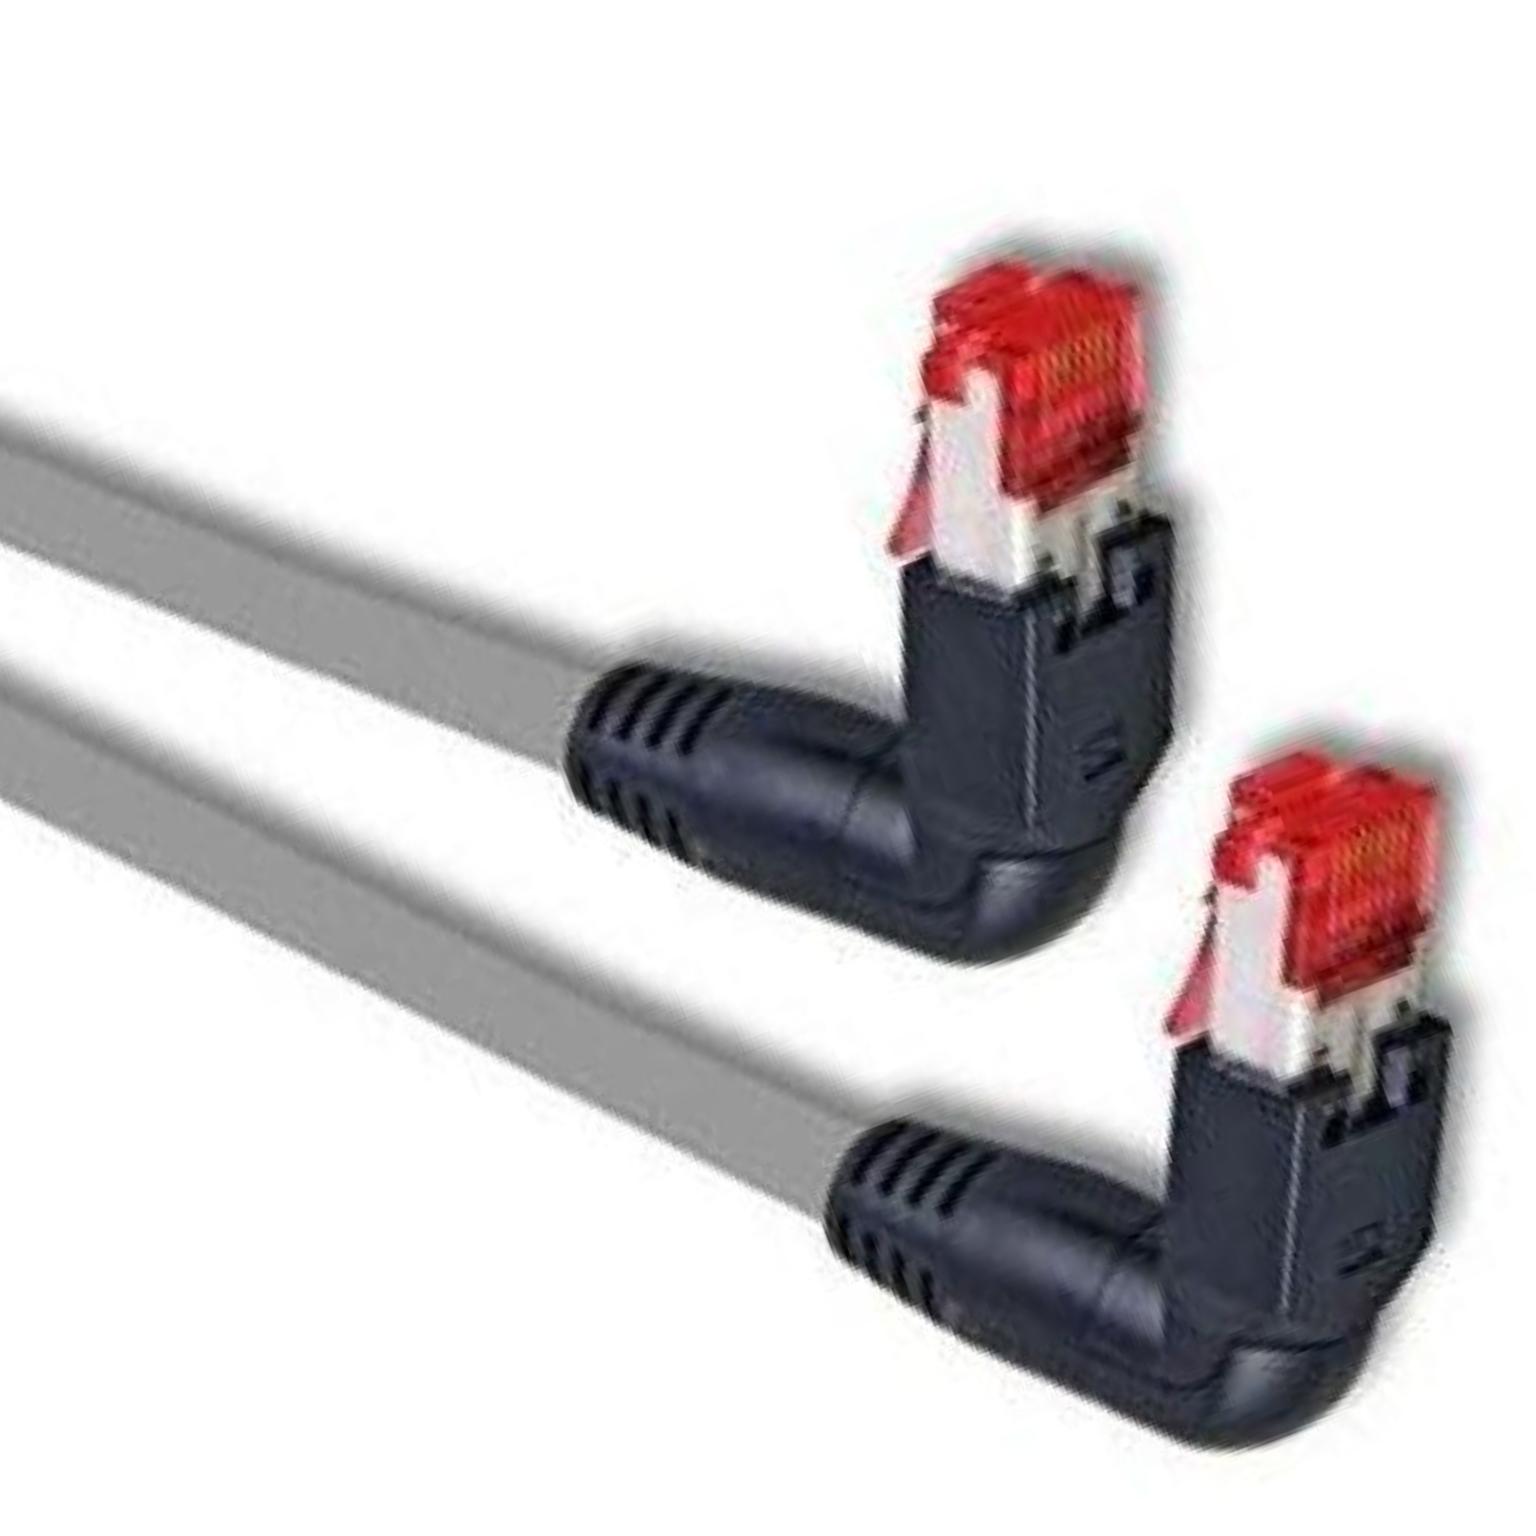 S/FTP Cat 6 kabel Haaks - Techtube Pro